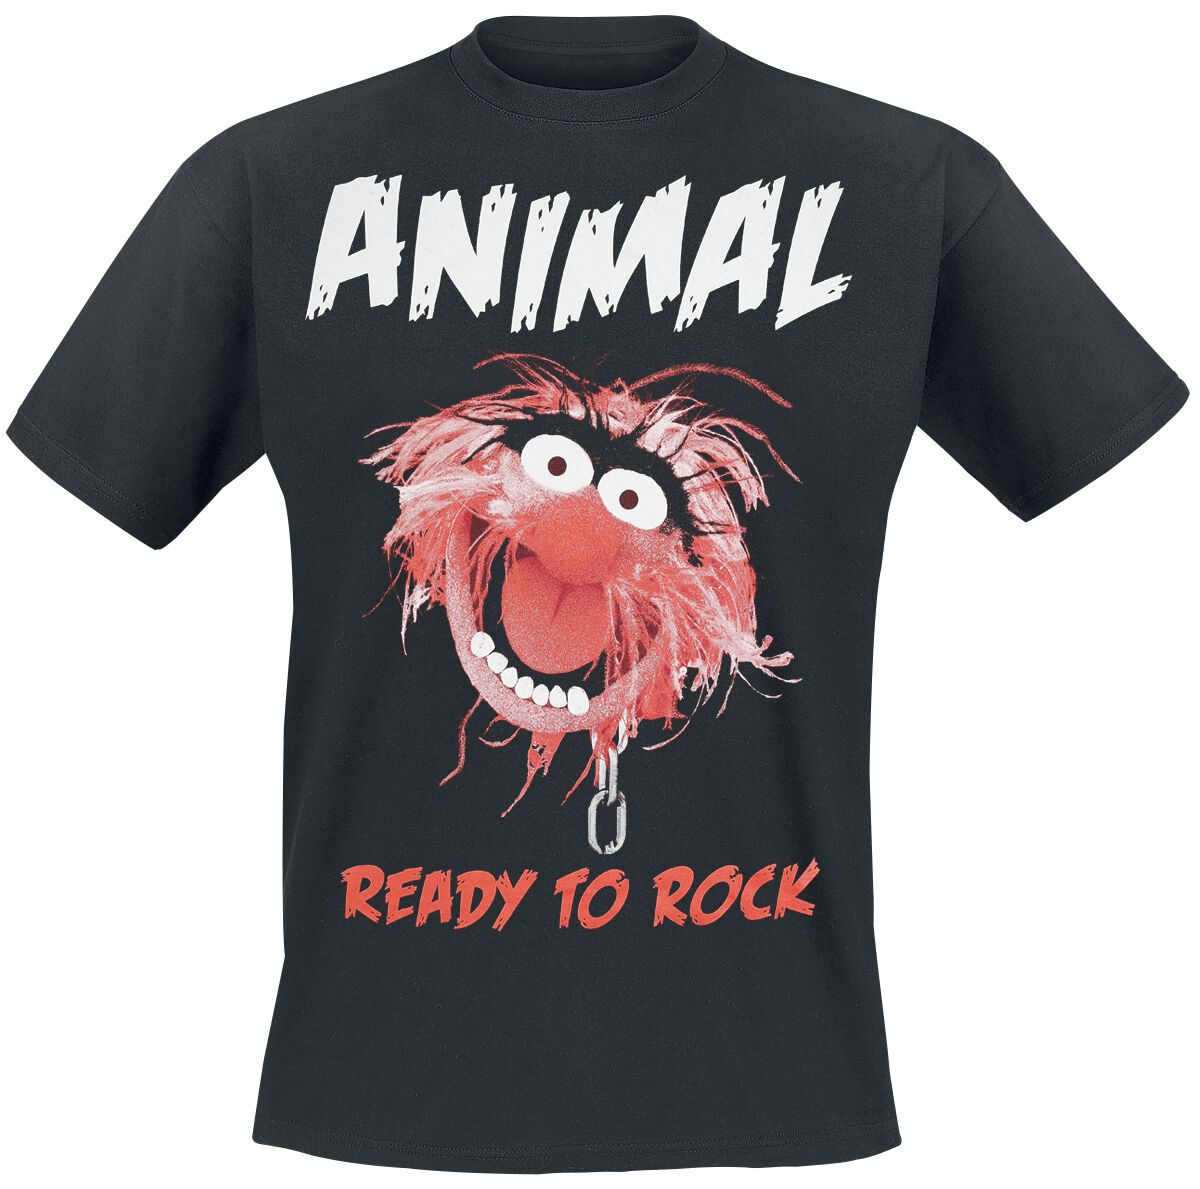 Die Muppets Animal - Ready To Rock T-Shirt schwarz in M